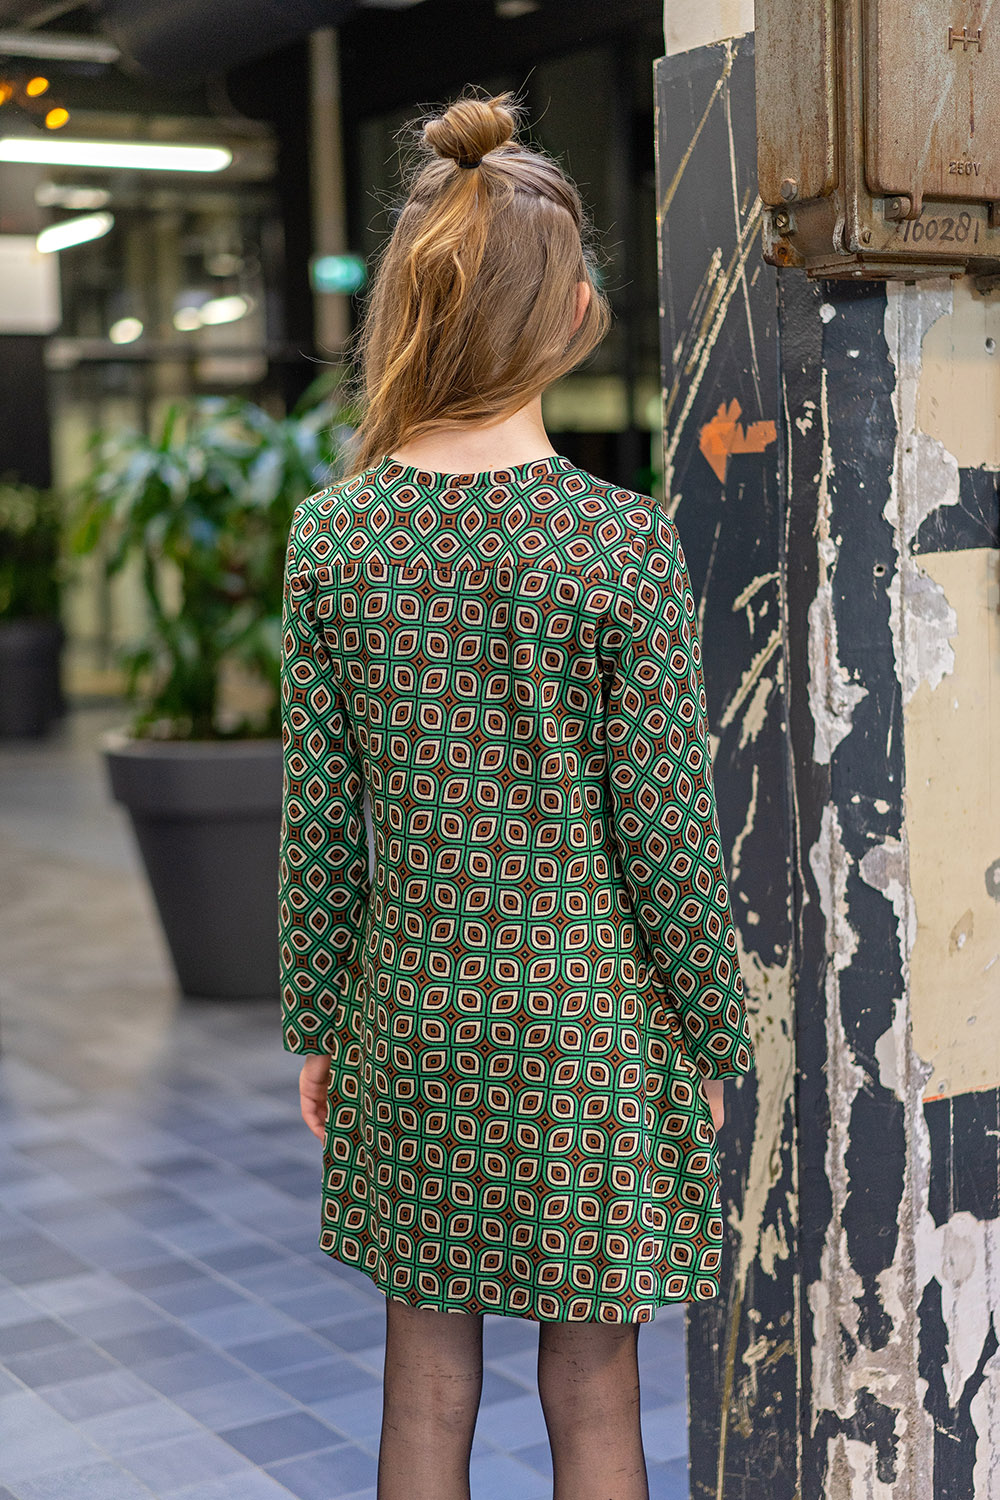 Deze polyester viscose tricot abstract limoen groen kan onder andere gebruikt worden voor het maken van kleding, jurken, rokken, sjaals/doeken, topjes, en meer...